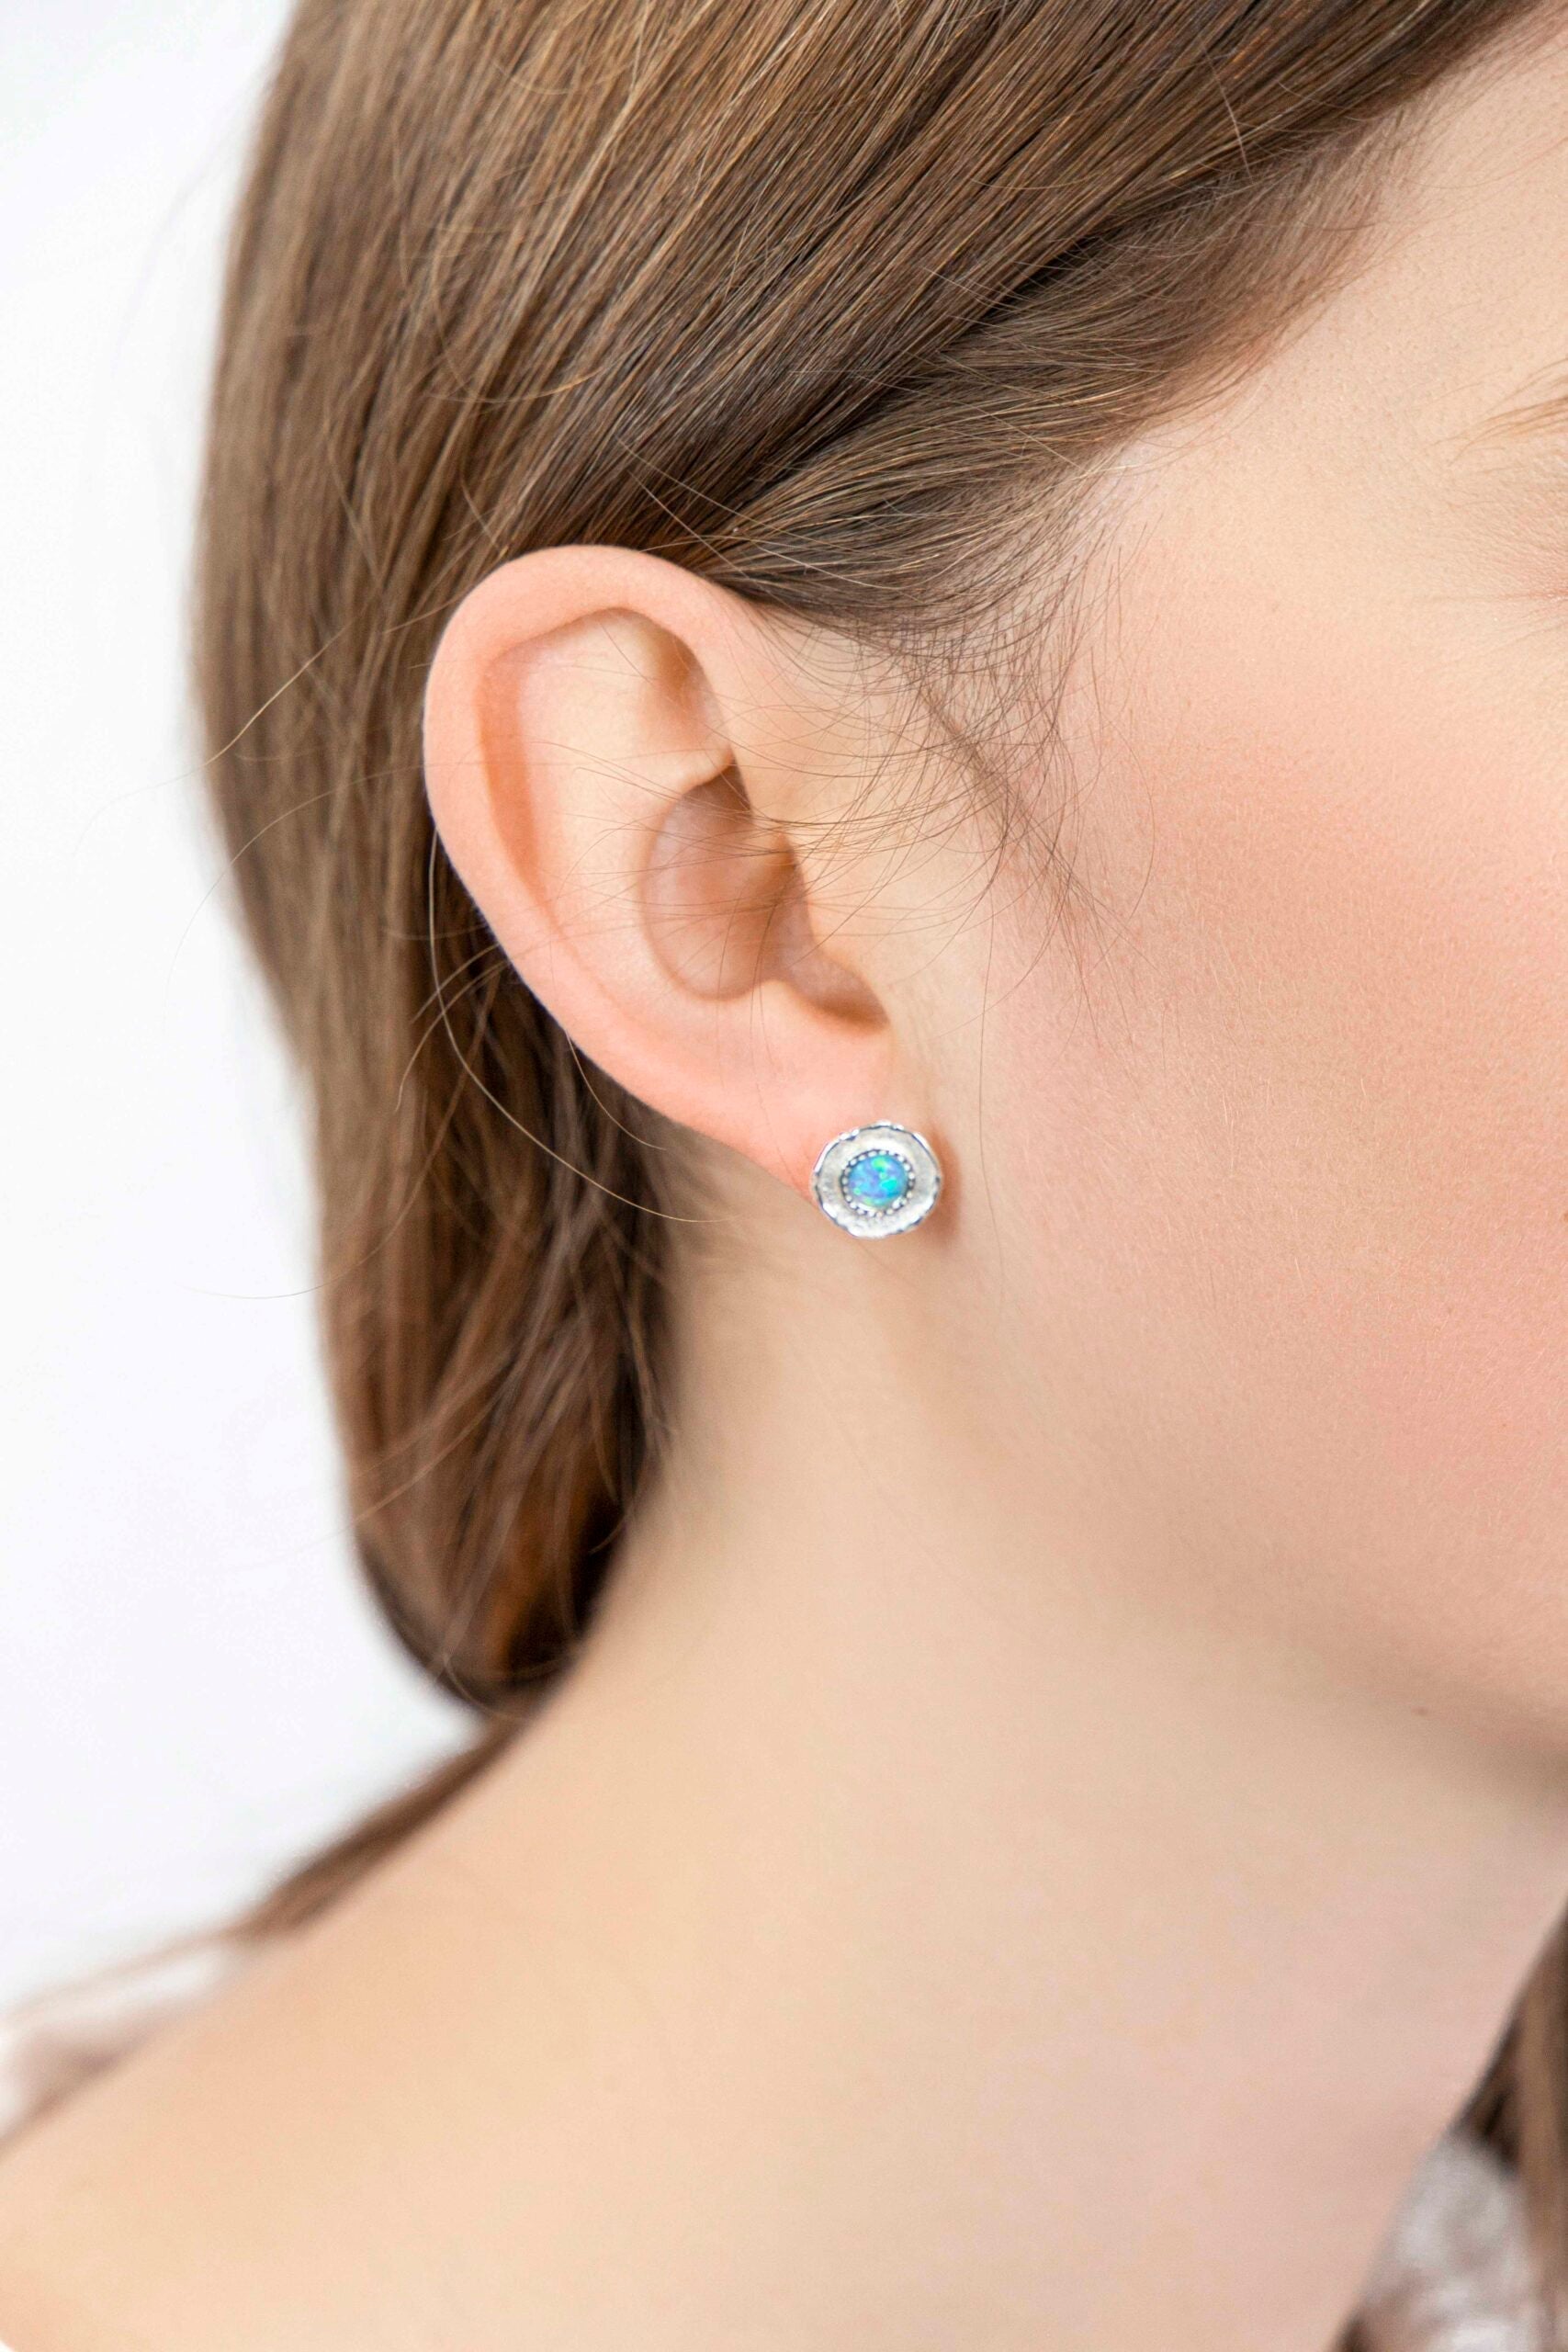 Opalite Stud Earrings - The Nancy Smillie Shop - Art, Jewellery & Designer Gifts Glasgow